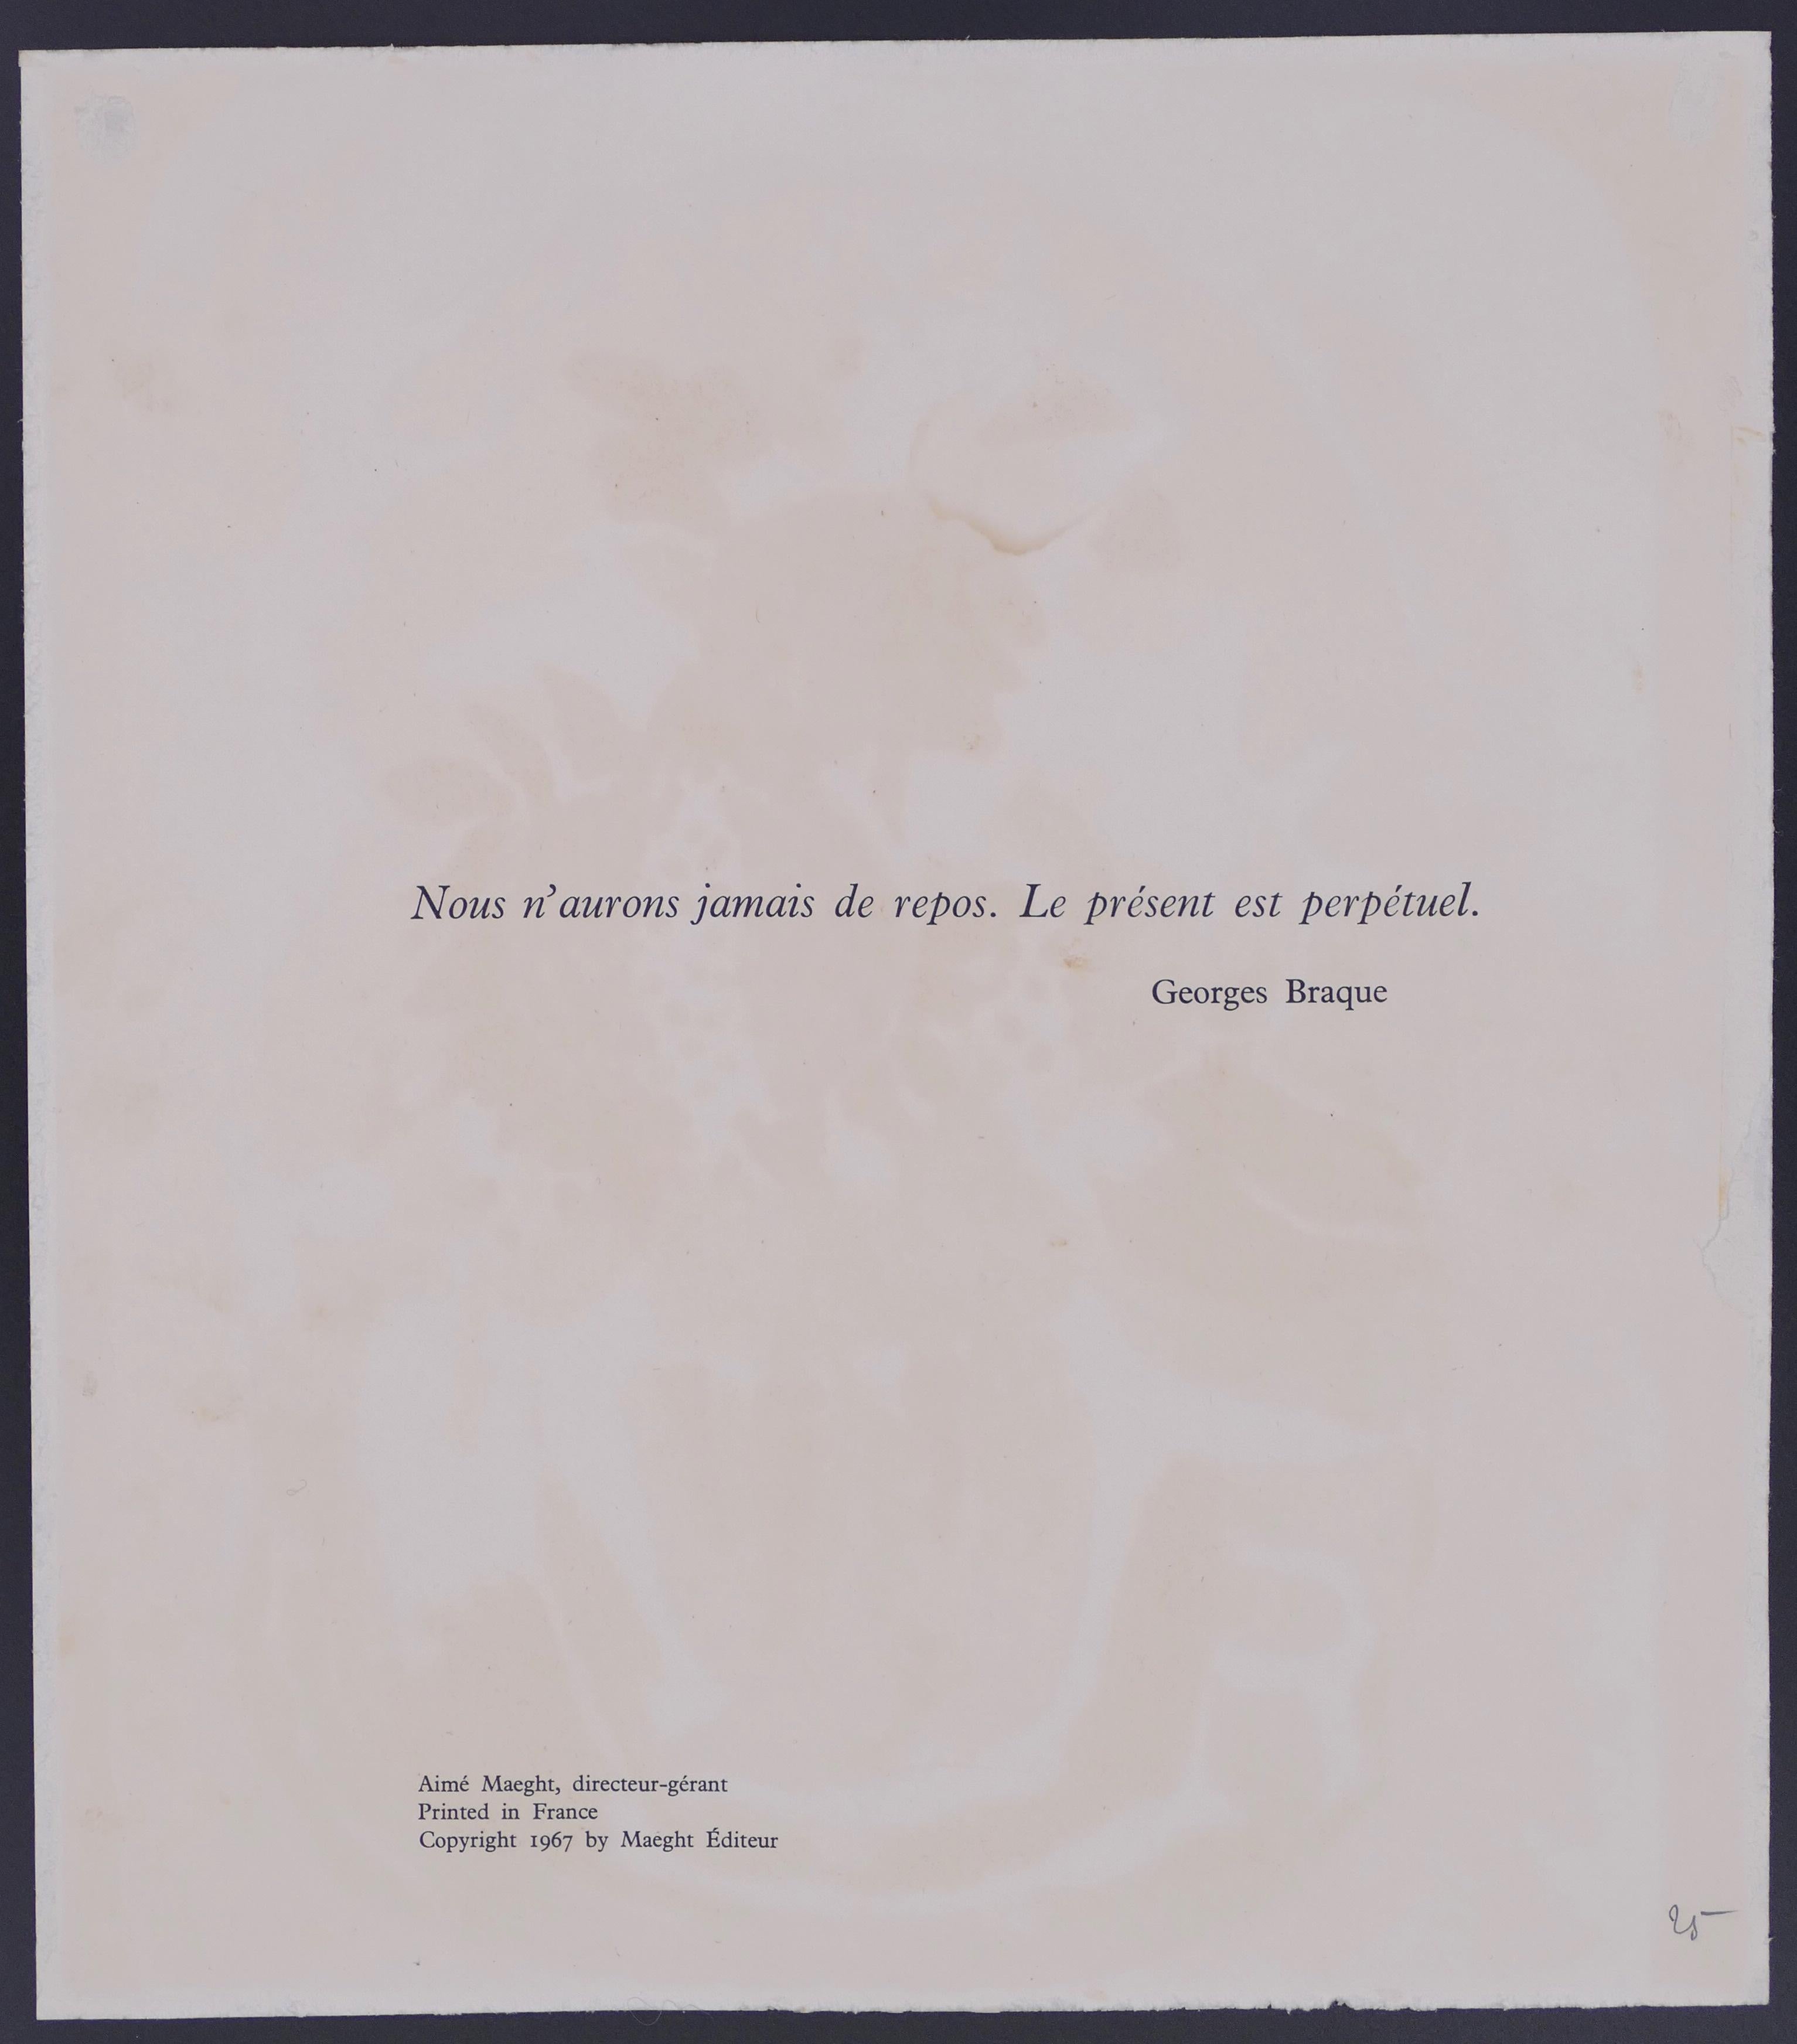 Le Repos ist eine Original-Lithographie von Georges Braque (nach) (Argenteuil, 1882 - Paris, 1963) aus dem Jahr 1967.

Original-Lithographie auf Papier.

Herausgegeben von Maeght Editeur, Paris. Credits auf der Rückseite gedruckt.

Neuwertige